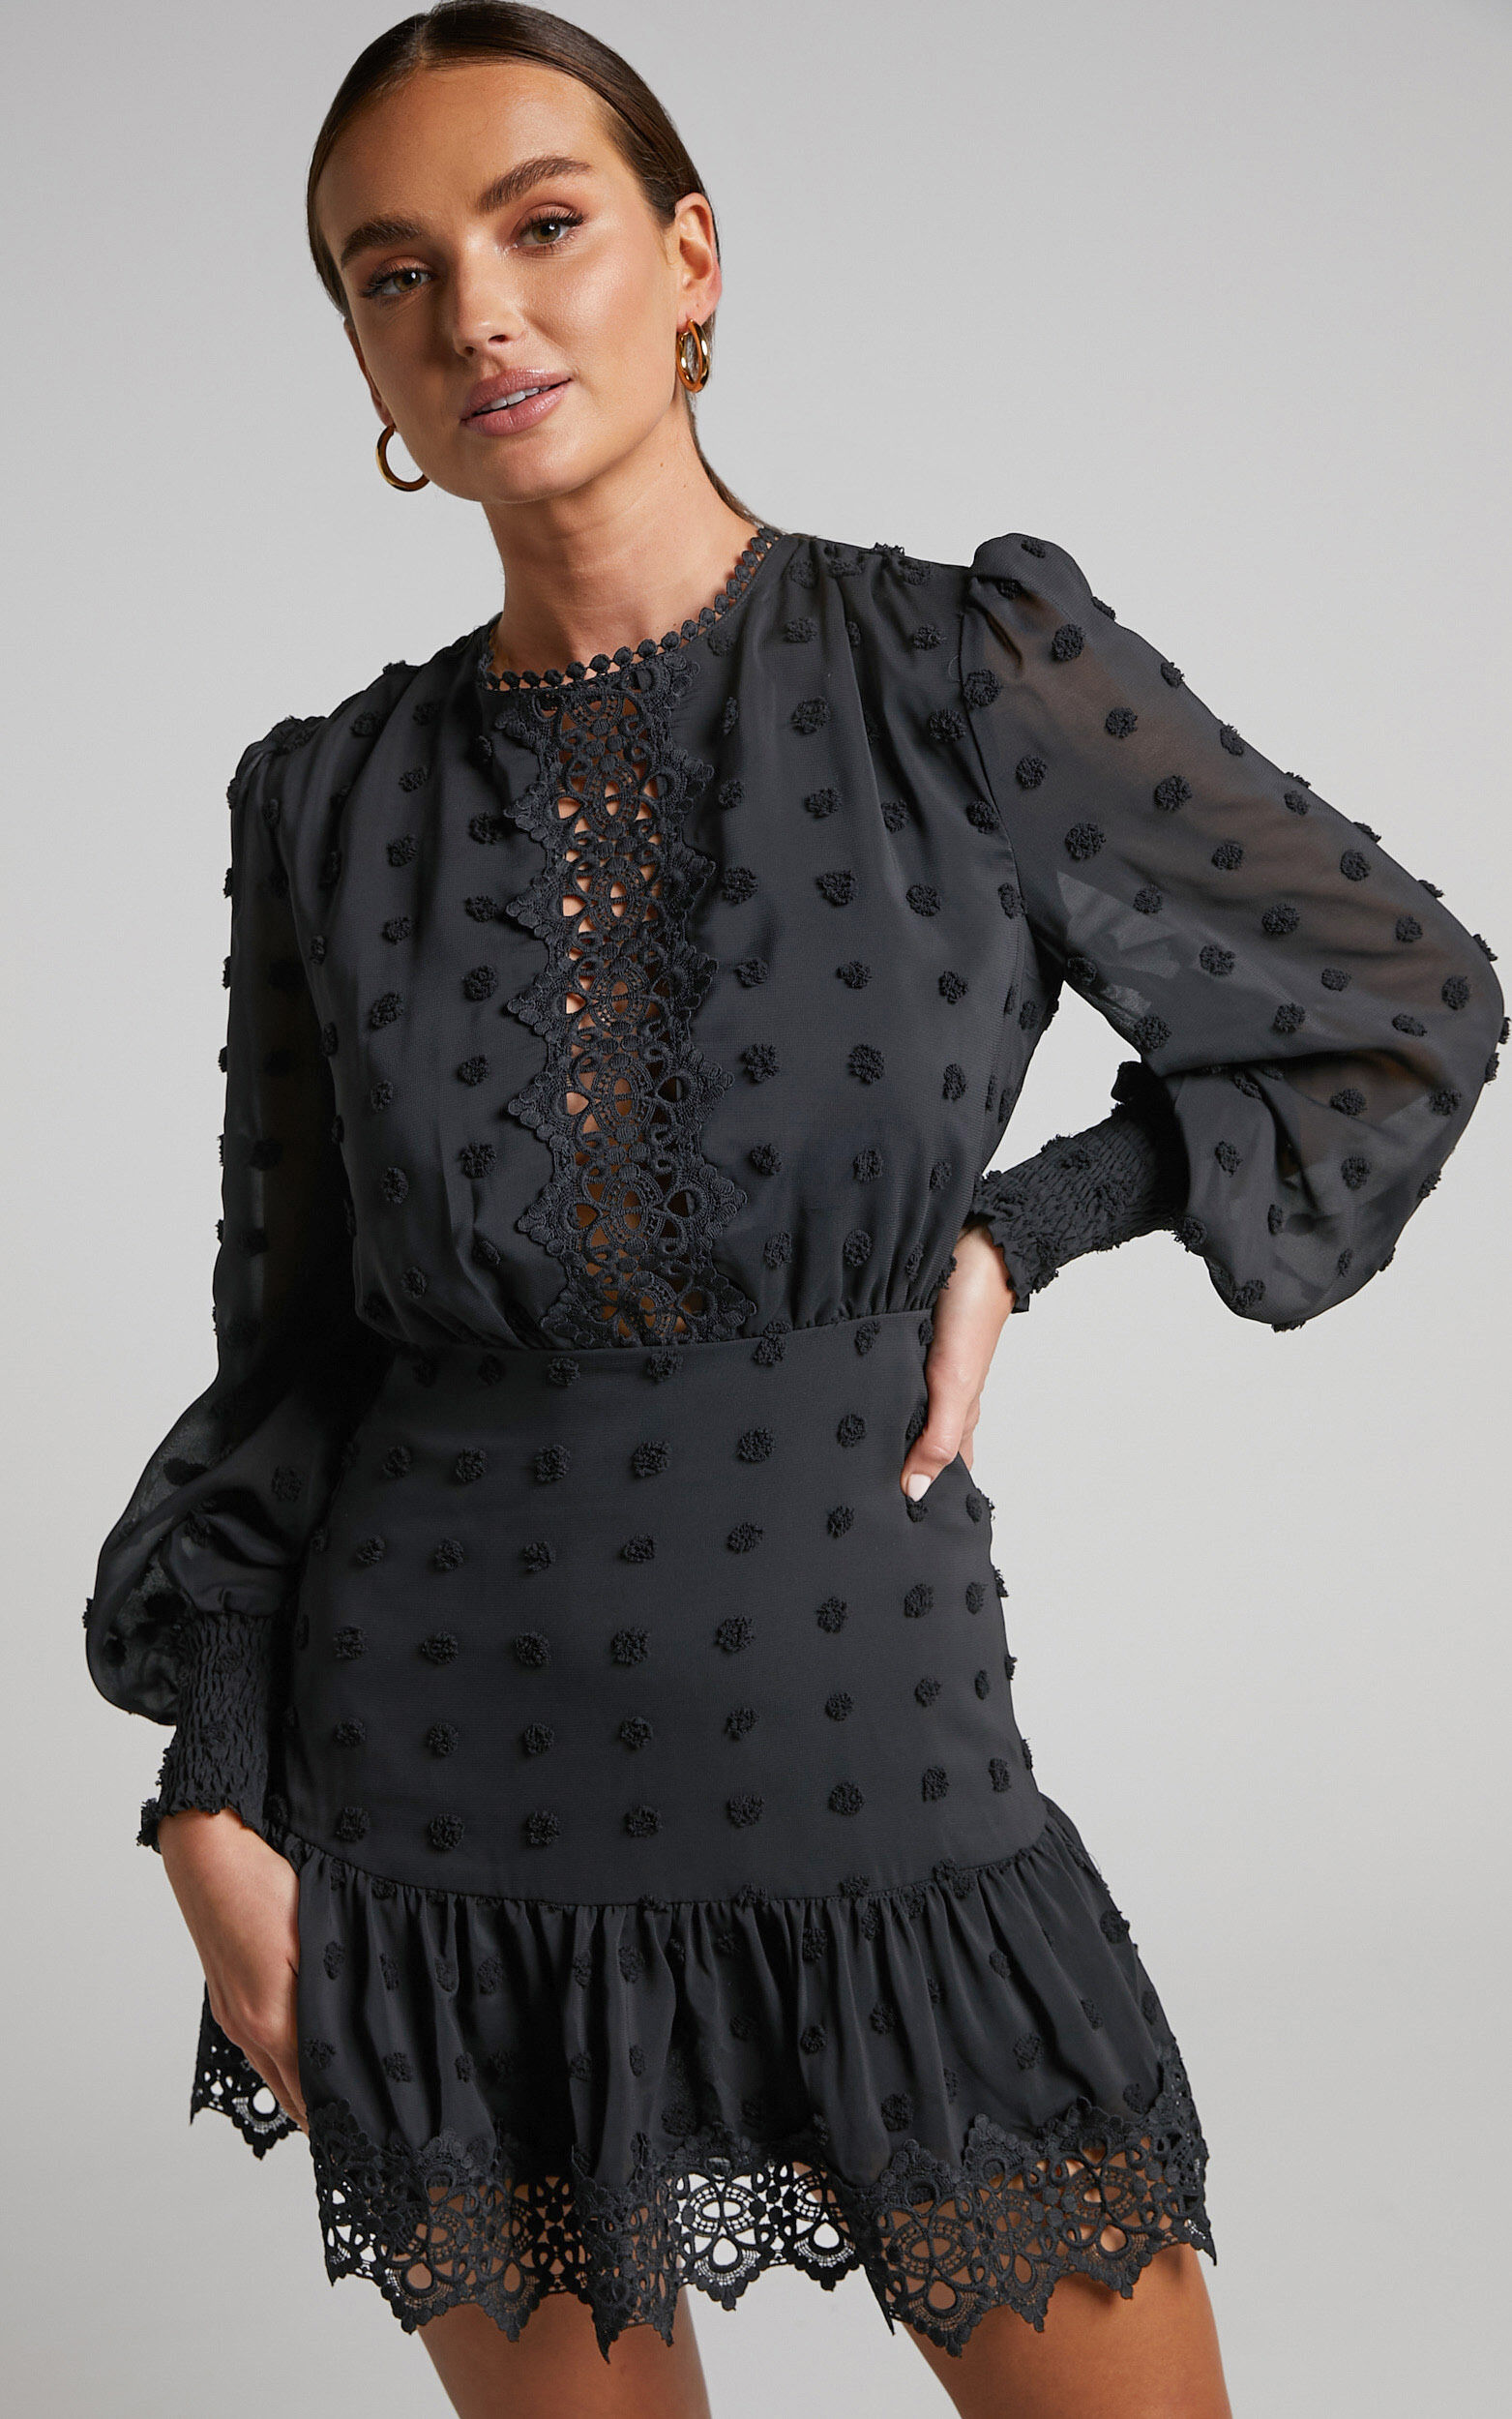 Meihna Mini Dress - Lace Detail Long Sleeve Dress in Black - 04, BLK1